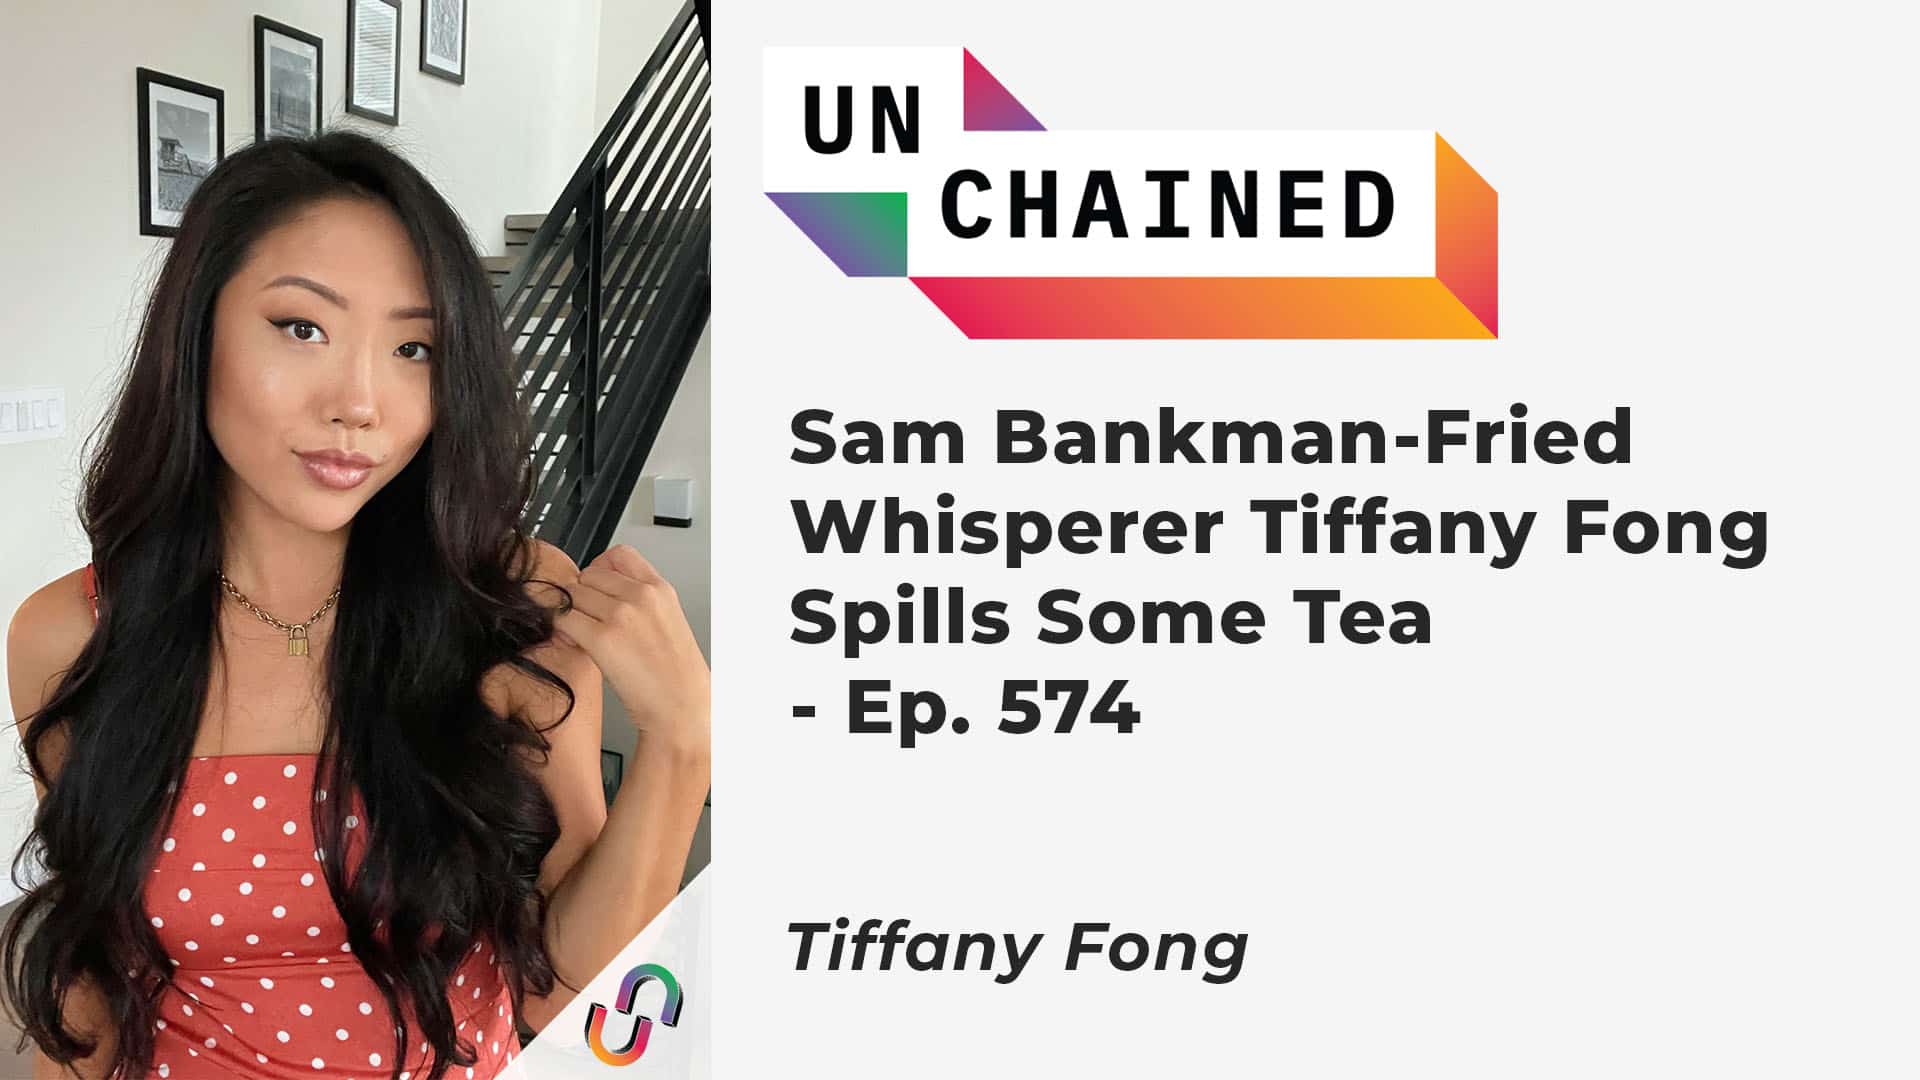 Sam Bankman-Fried Whisperer Tiffany Fong Spills Some Tea - Ep. 574